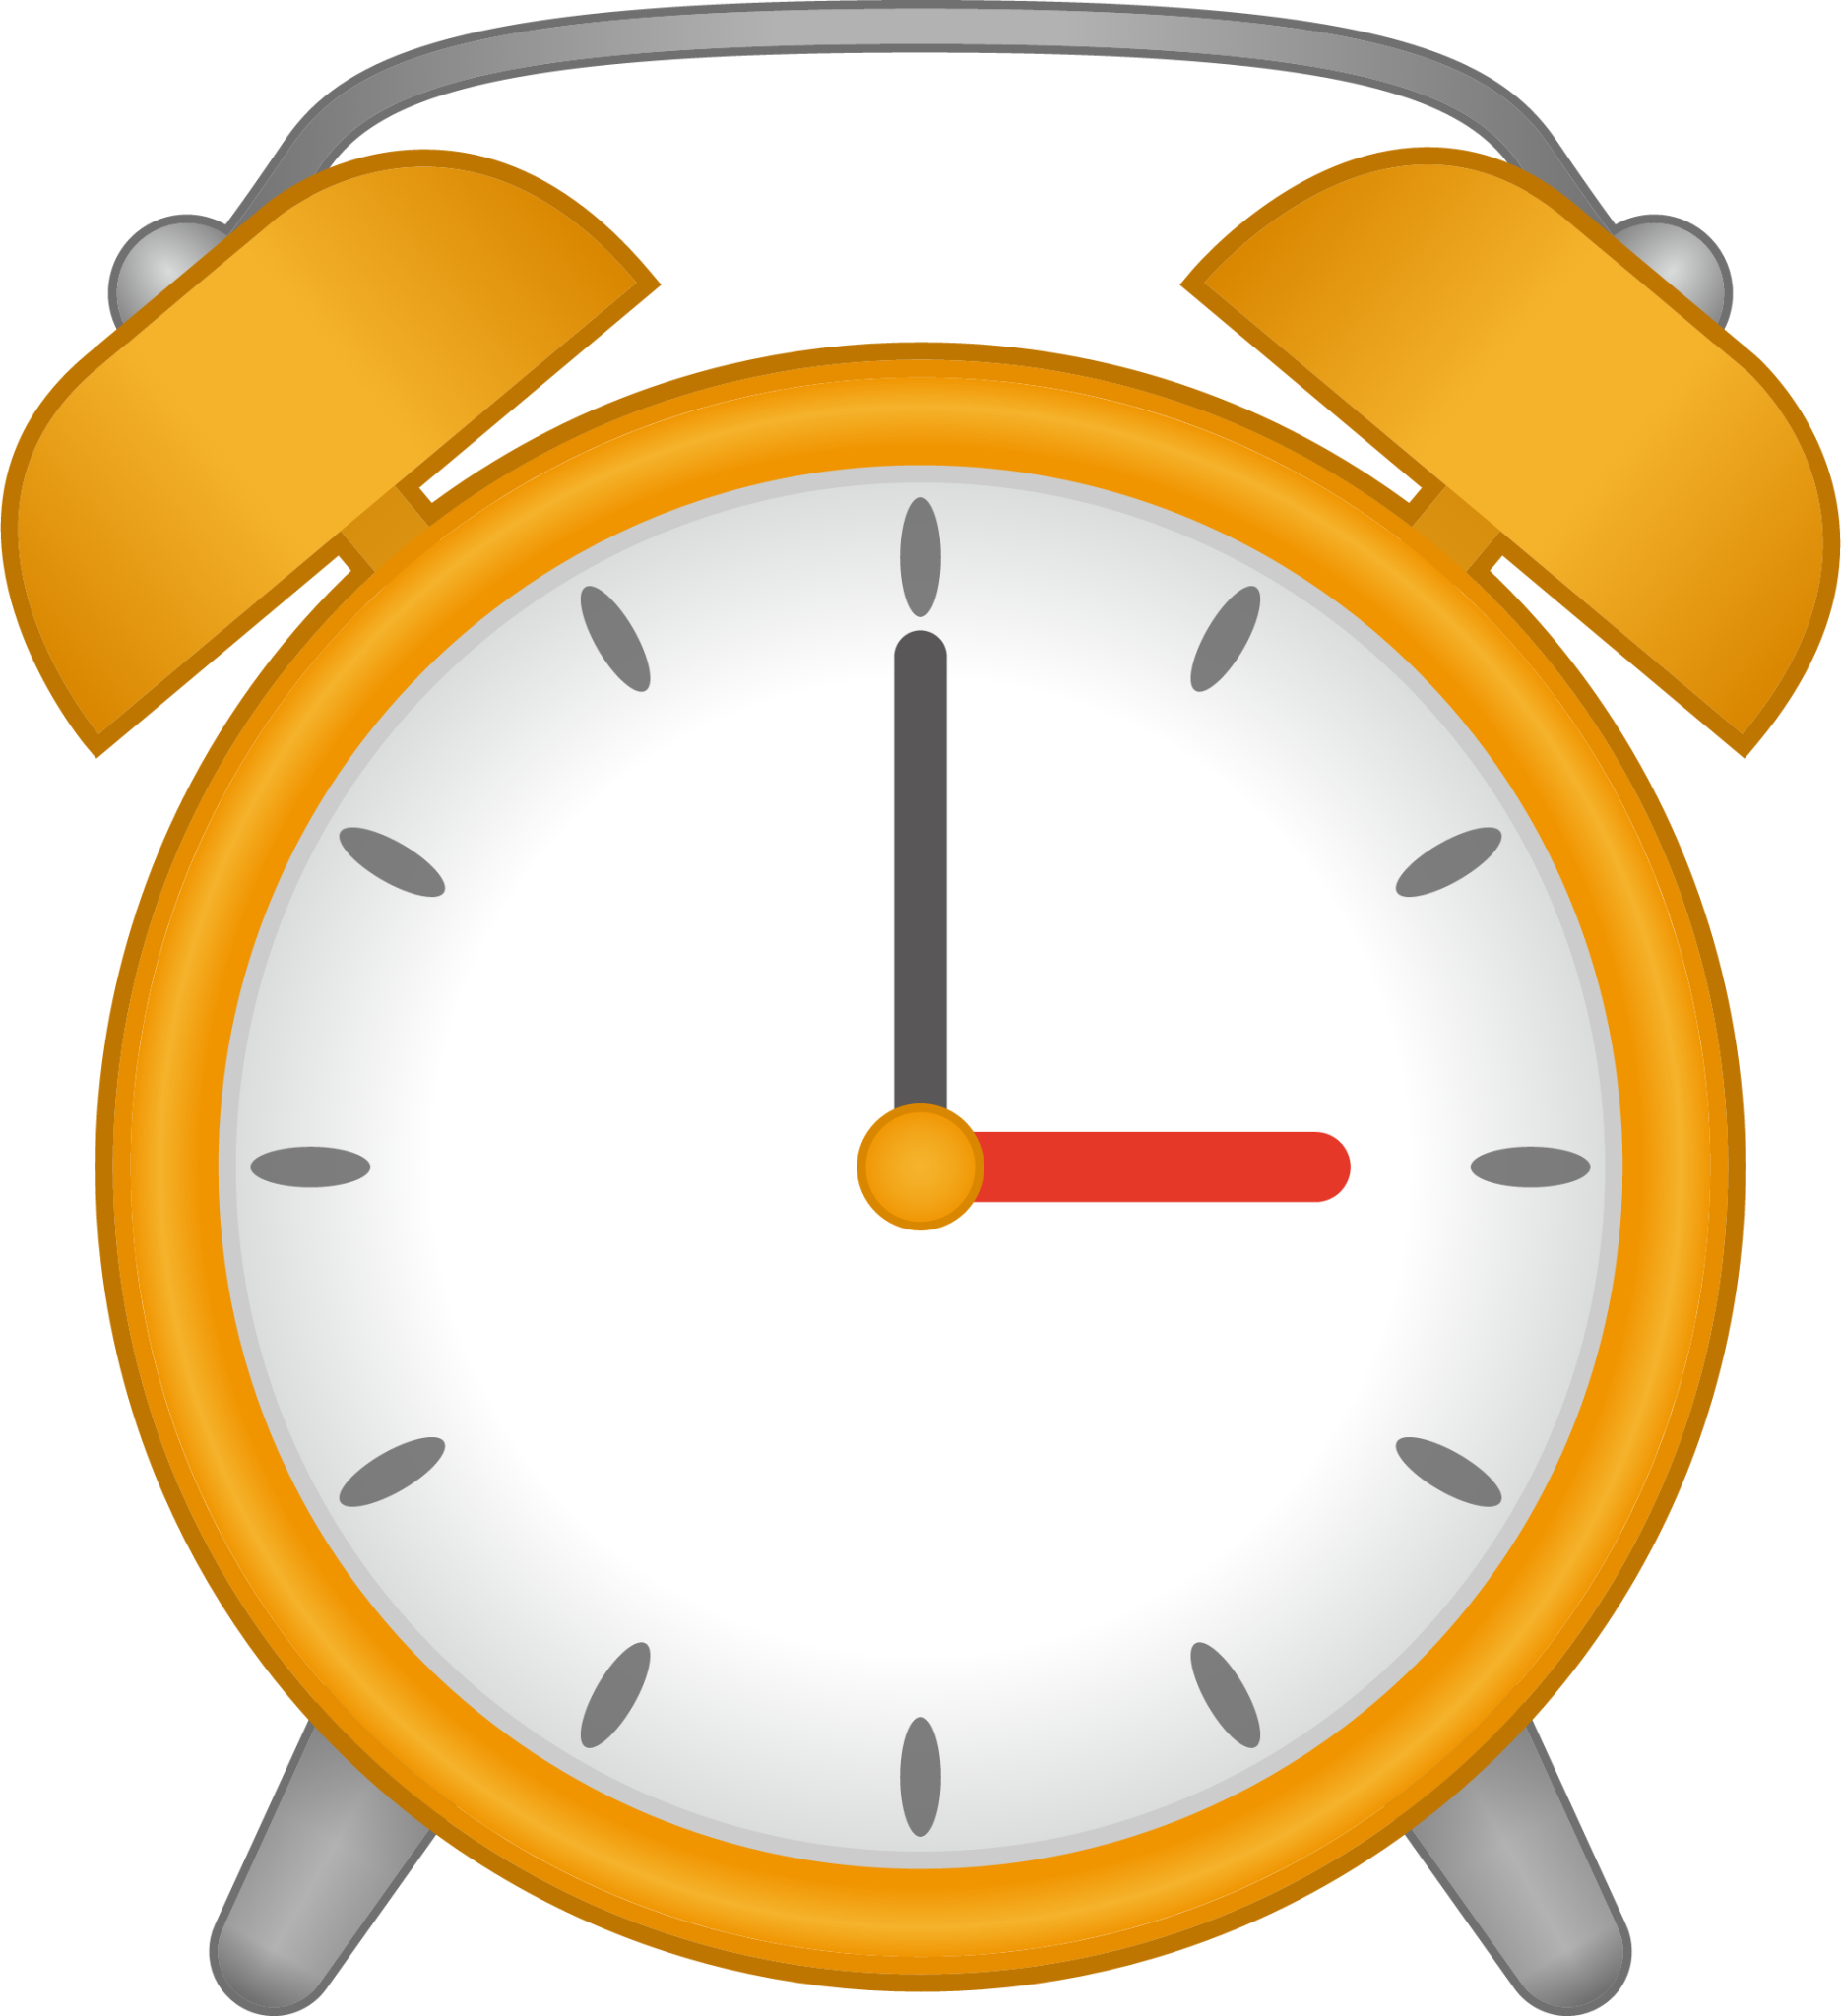 alarm clock (yellow) emoji